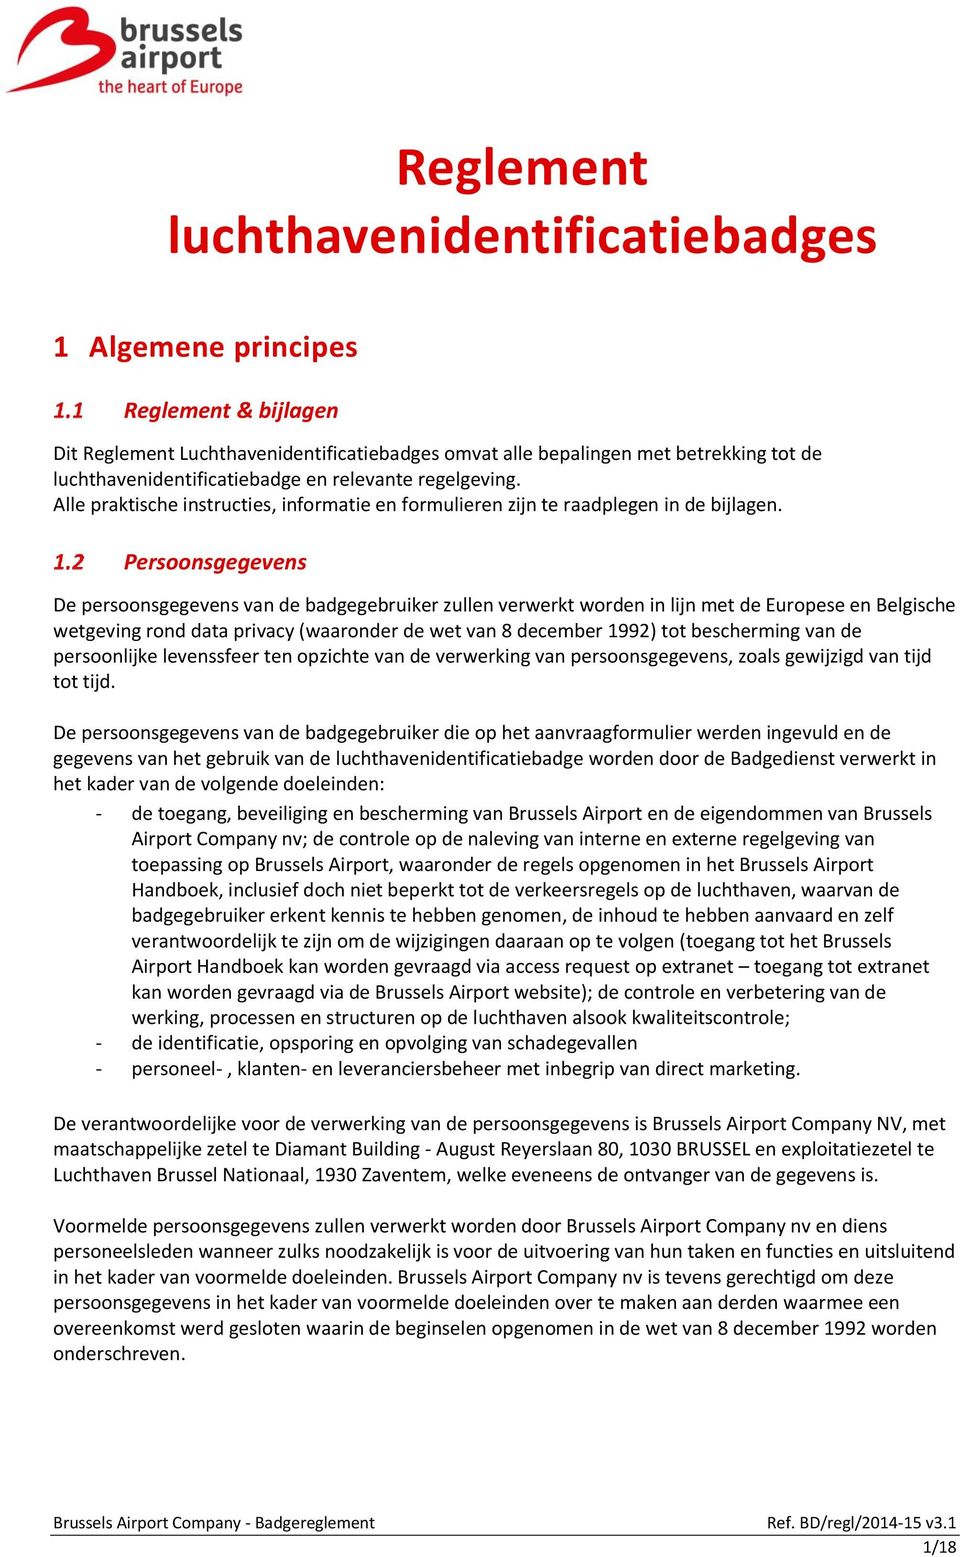 Persoonsgegevens De persoonsgegevens van de badgegebruiker zullen verwerkt worden in lijn met de Europese en Belgische wetgeving rond data privacy (waaronder de wet van 8 december 1992) tot